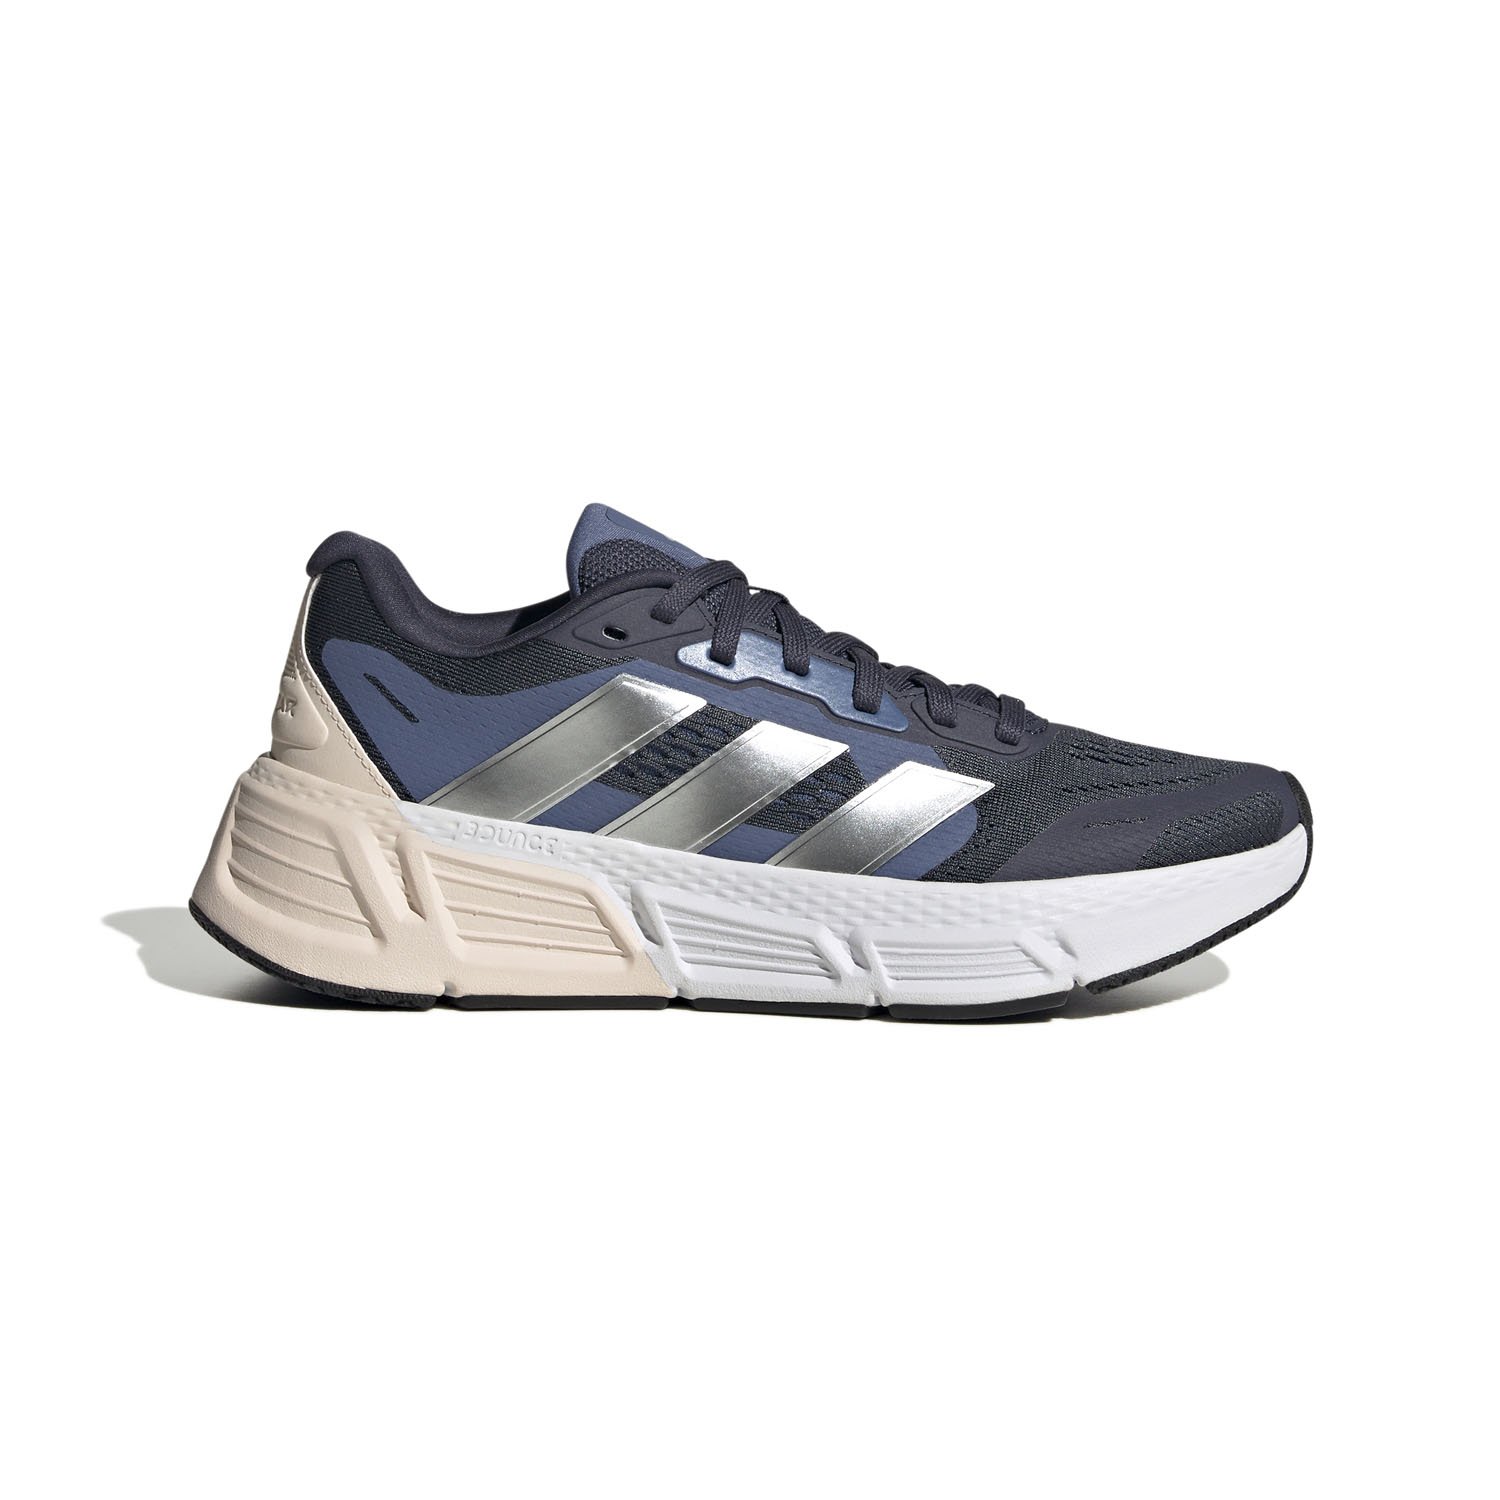 Adidas Questar 2 Kadın Koşu Ayakkabısı - Lacivert - 1